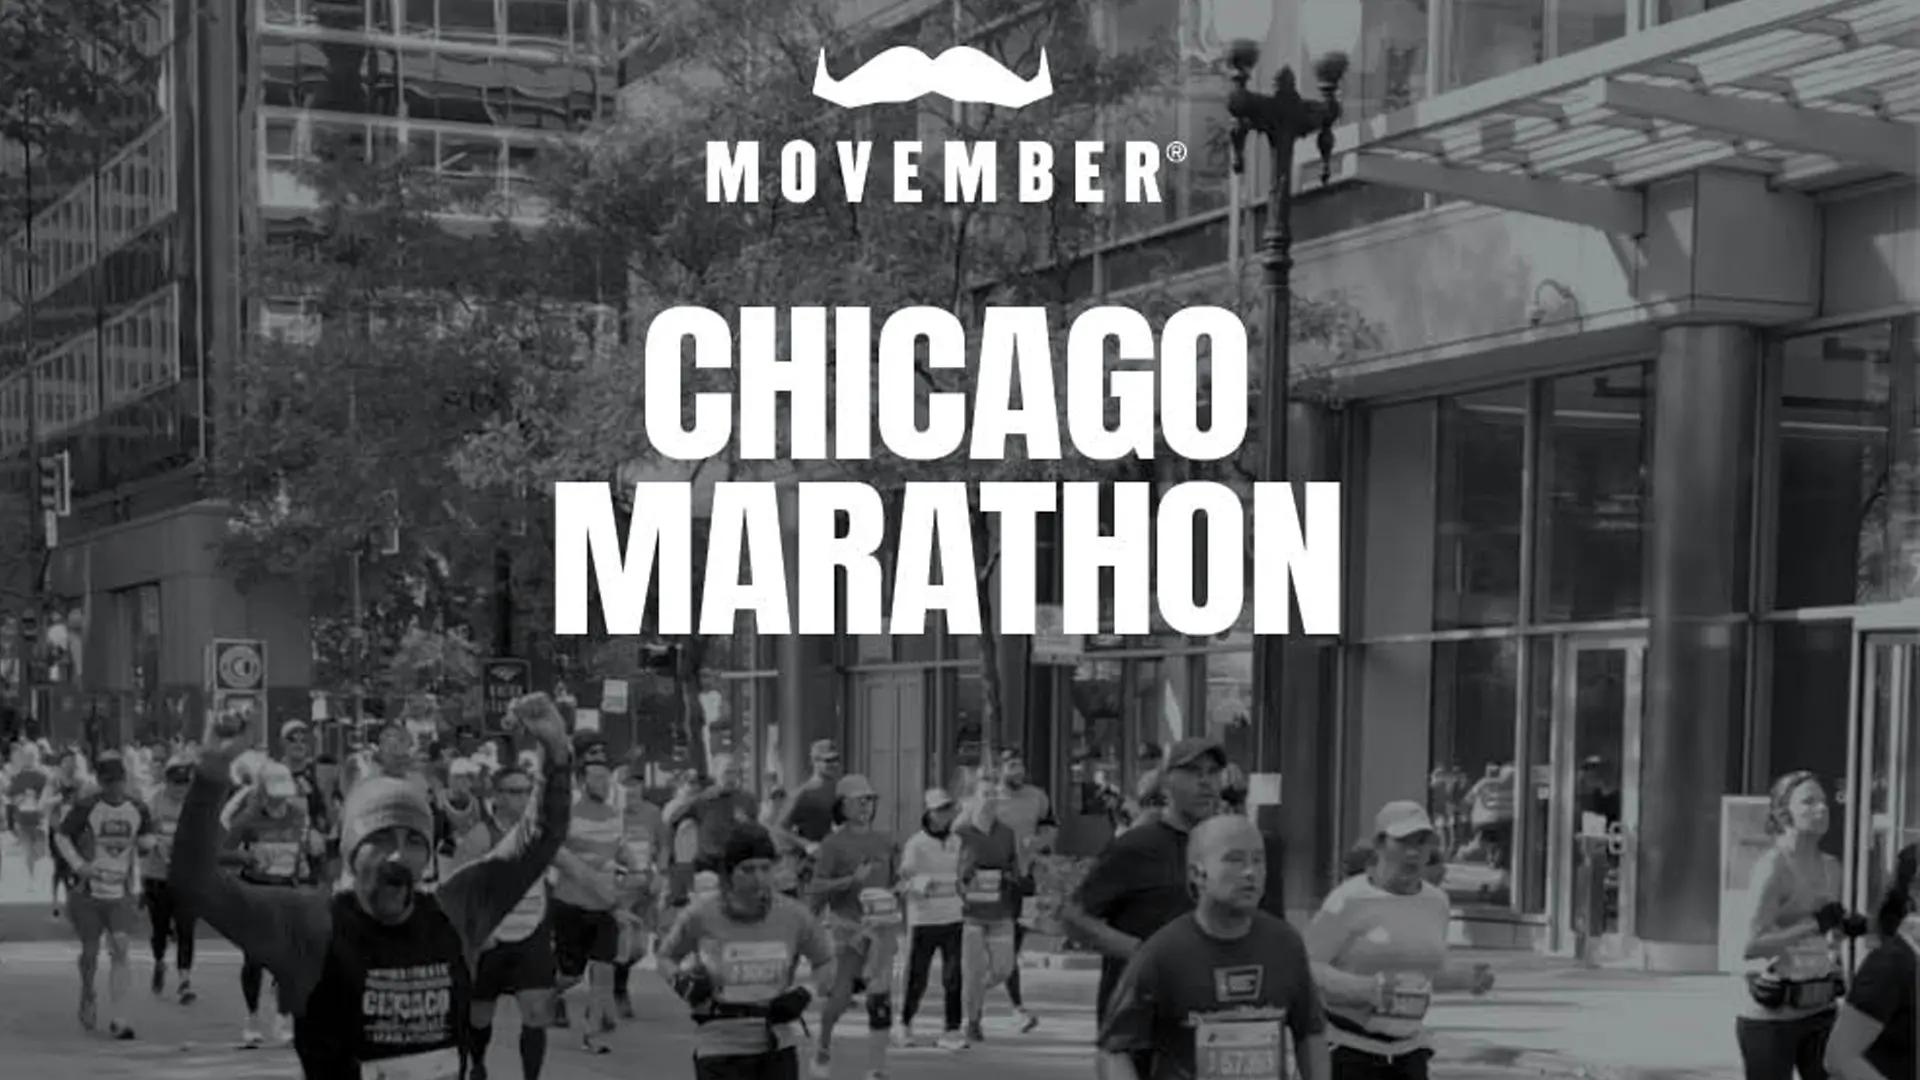 Black and white photo of Chicago Marathon runners.